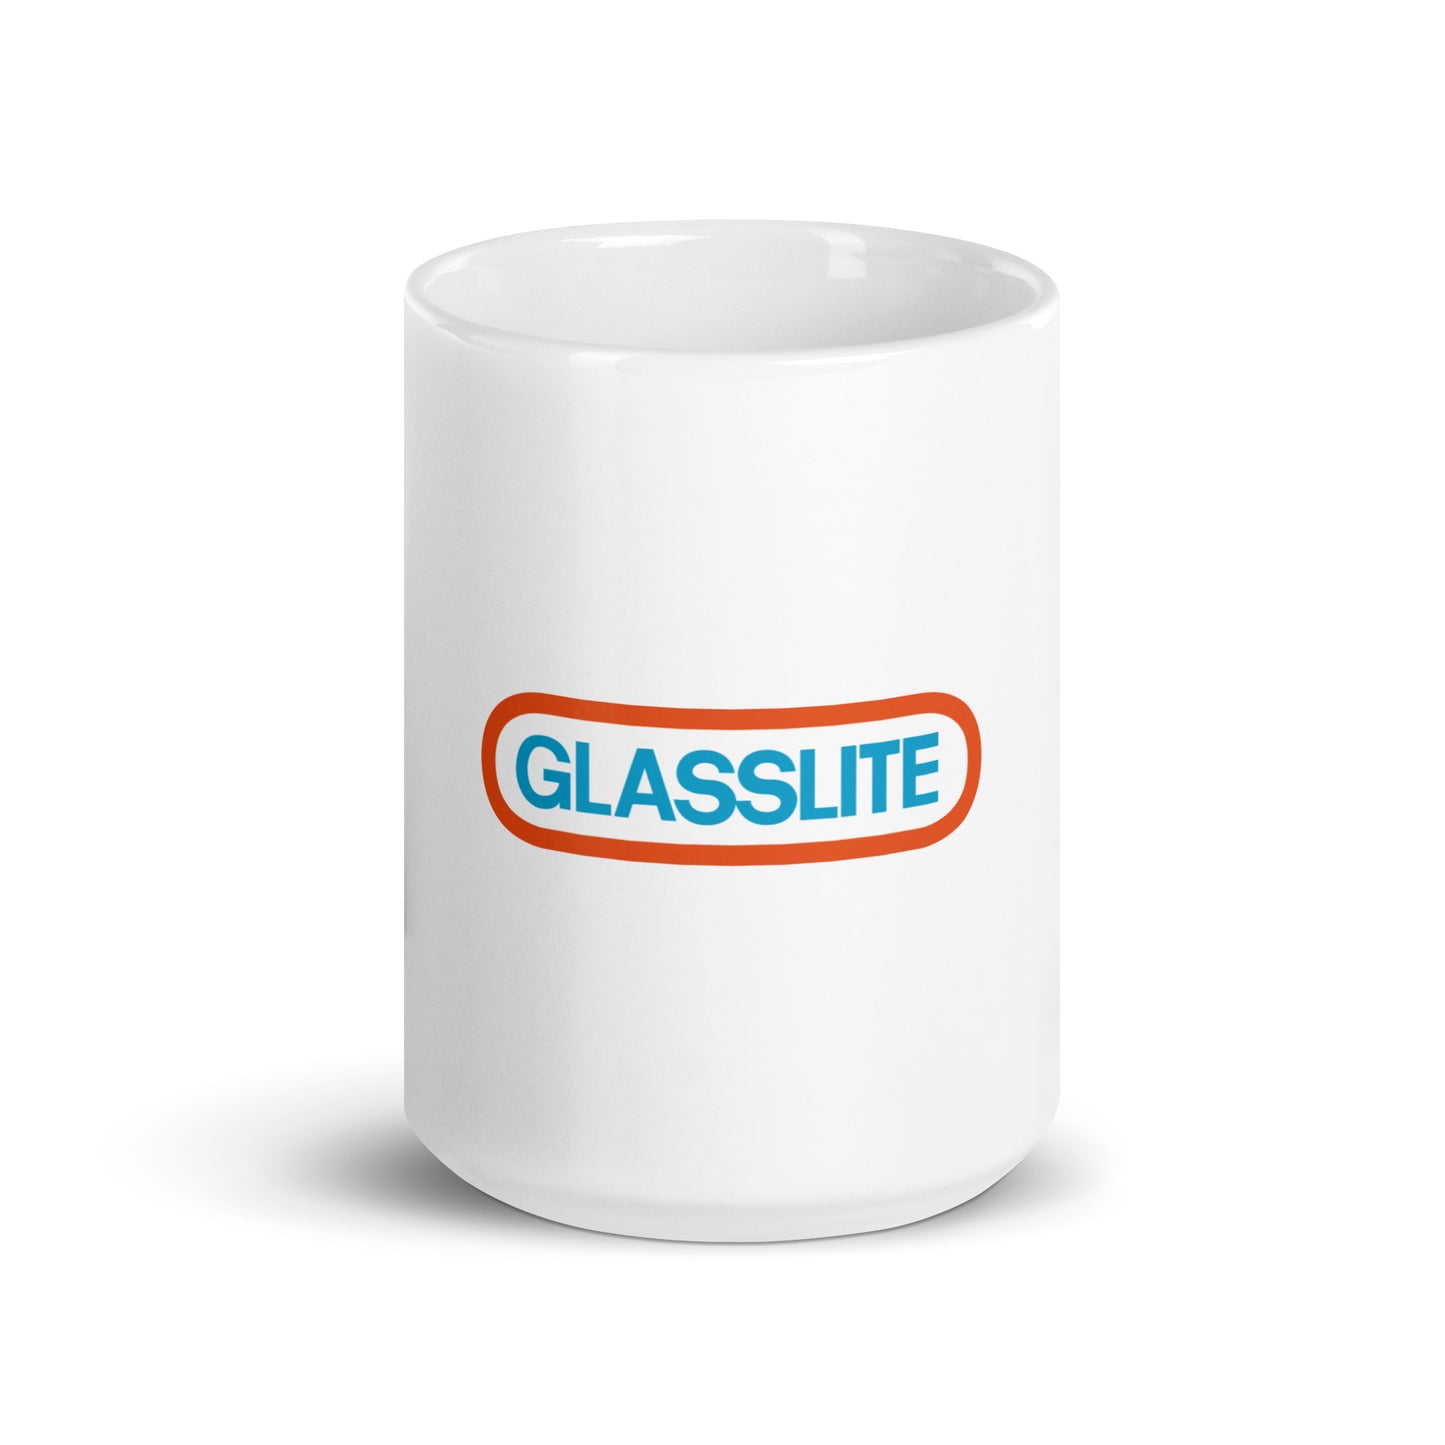 Vintage Star Wars Glasslite white glossy mug